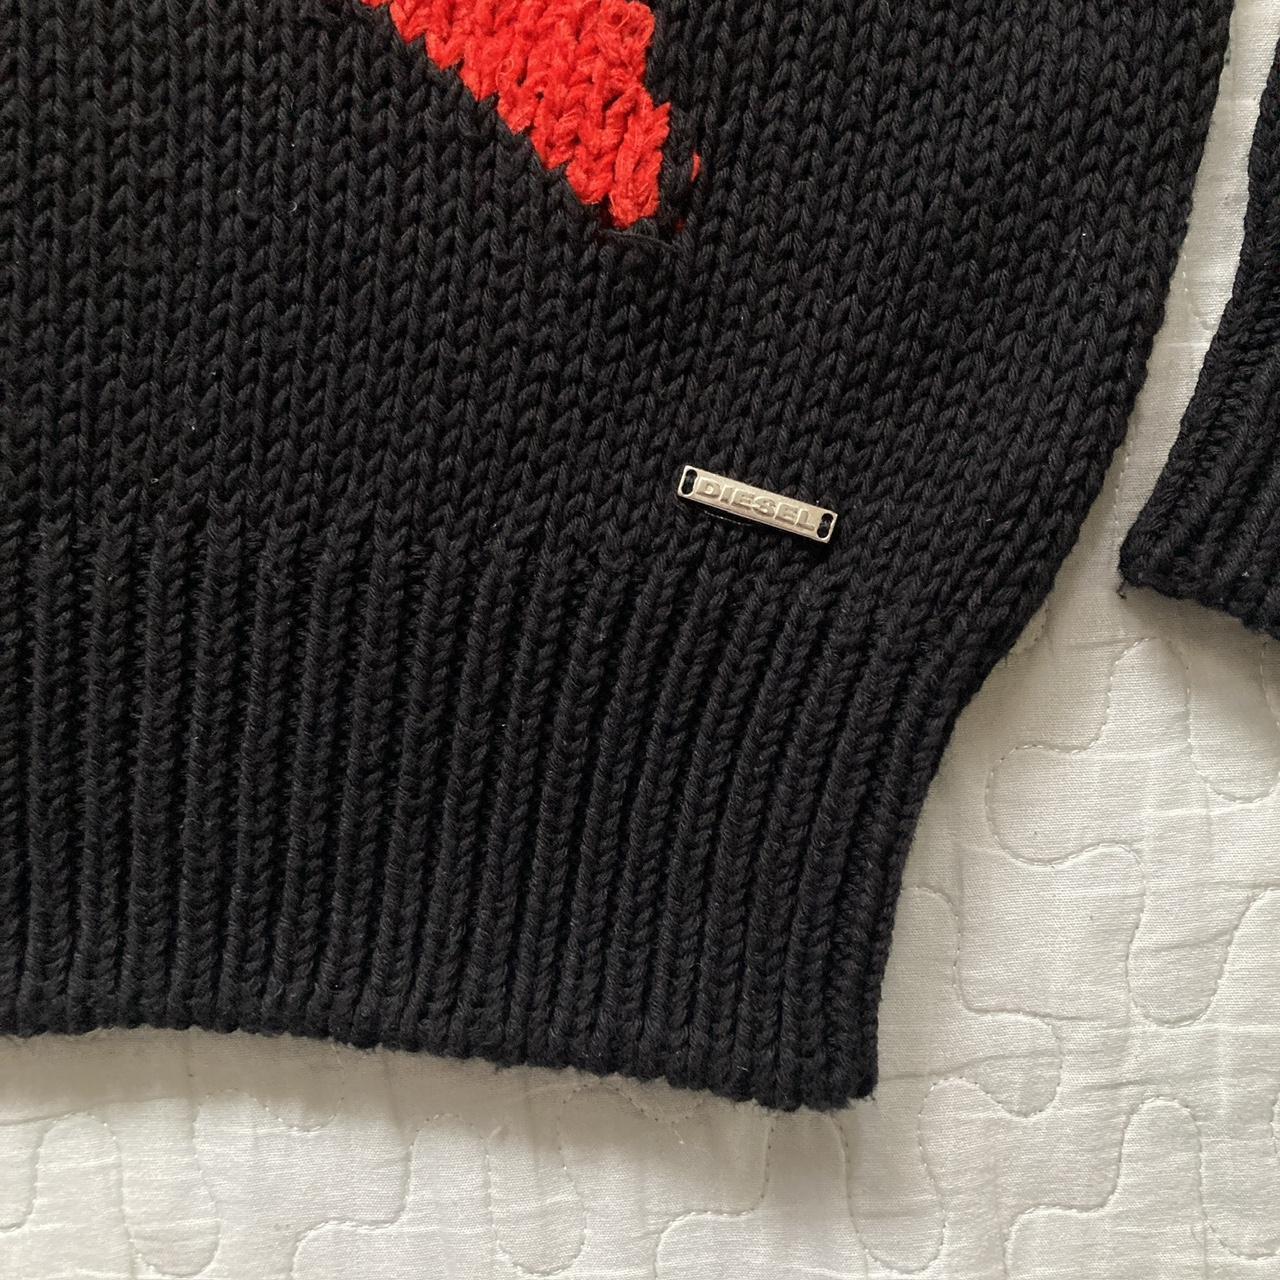 insane archival knit star sweater by Diesel ⭐️ size... - Depop